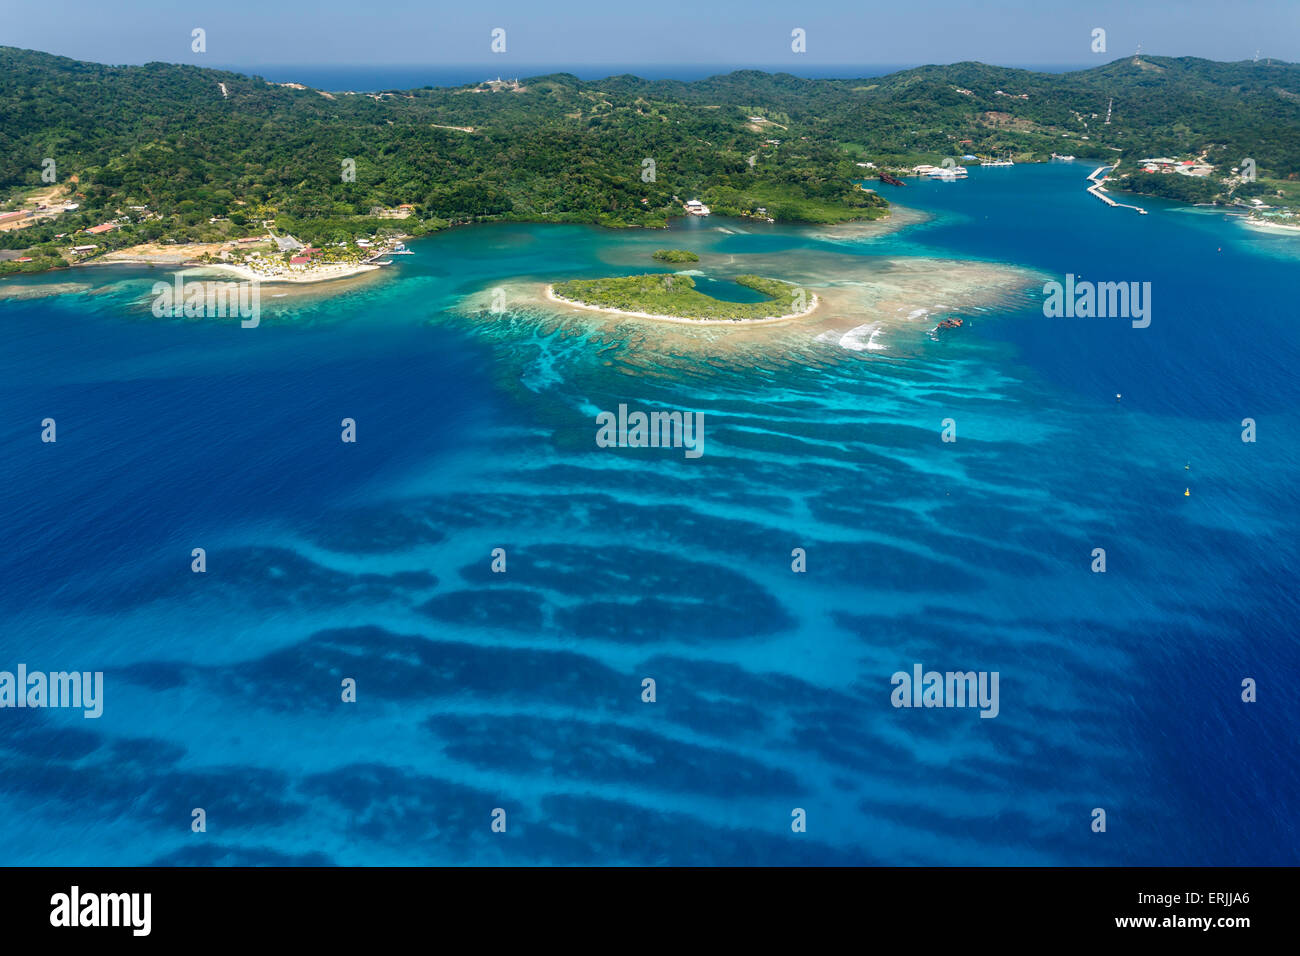 Immagine aerea del Coral reef off shore di Roatan Island in Honduras, Mar dei Caraibi Foto Stock